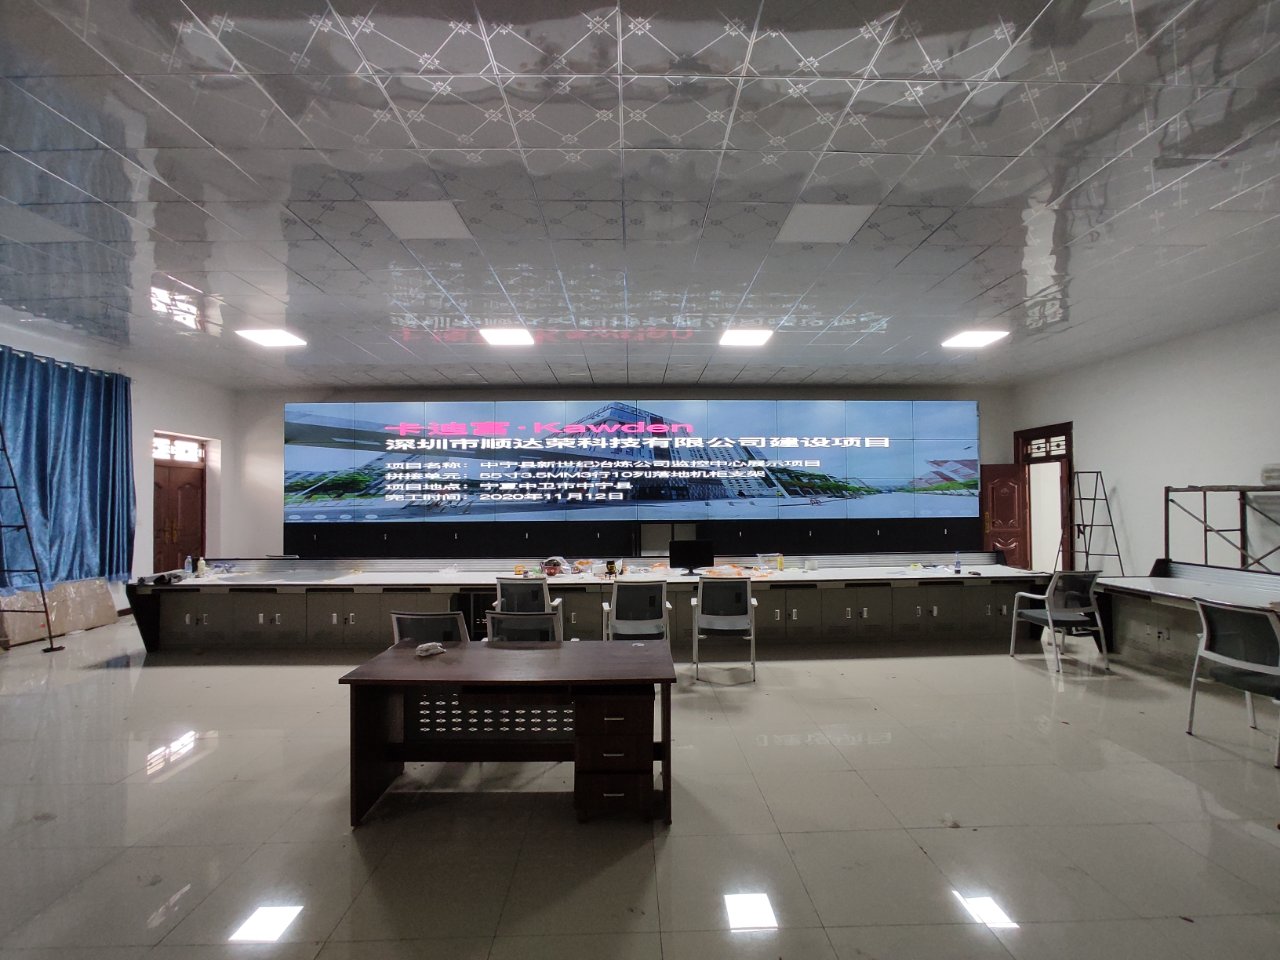 宁夏中宁县新世纪冶炼有限公司机柜式安装监控大屏幕4